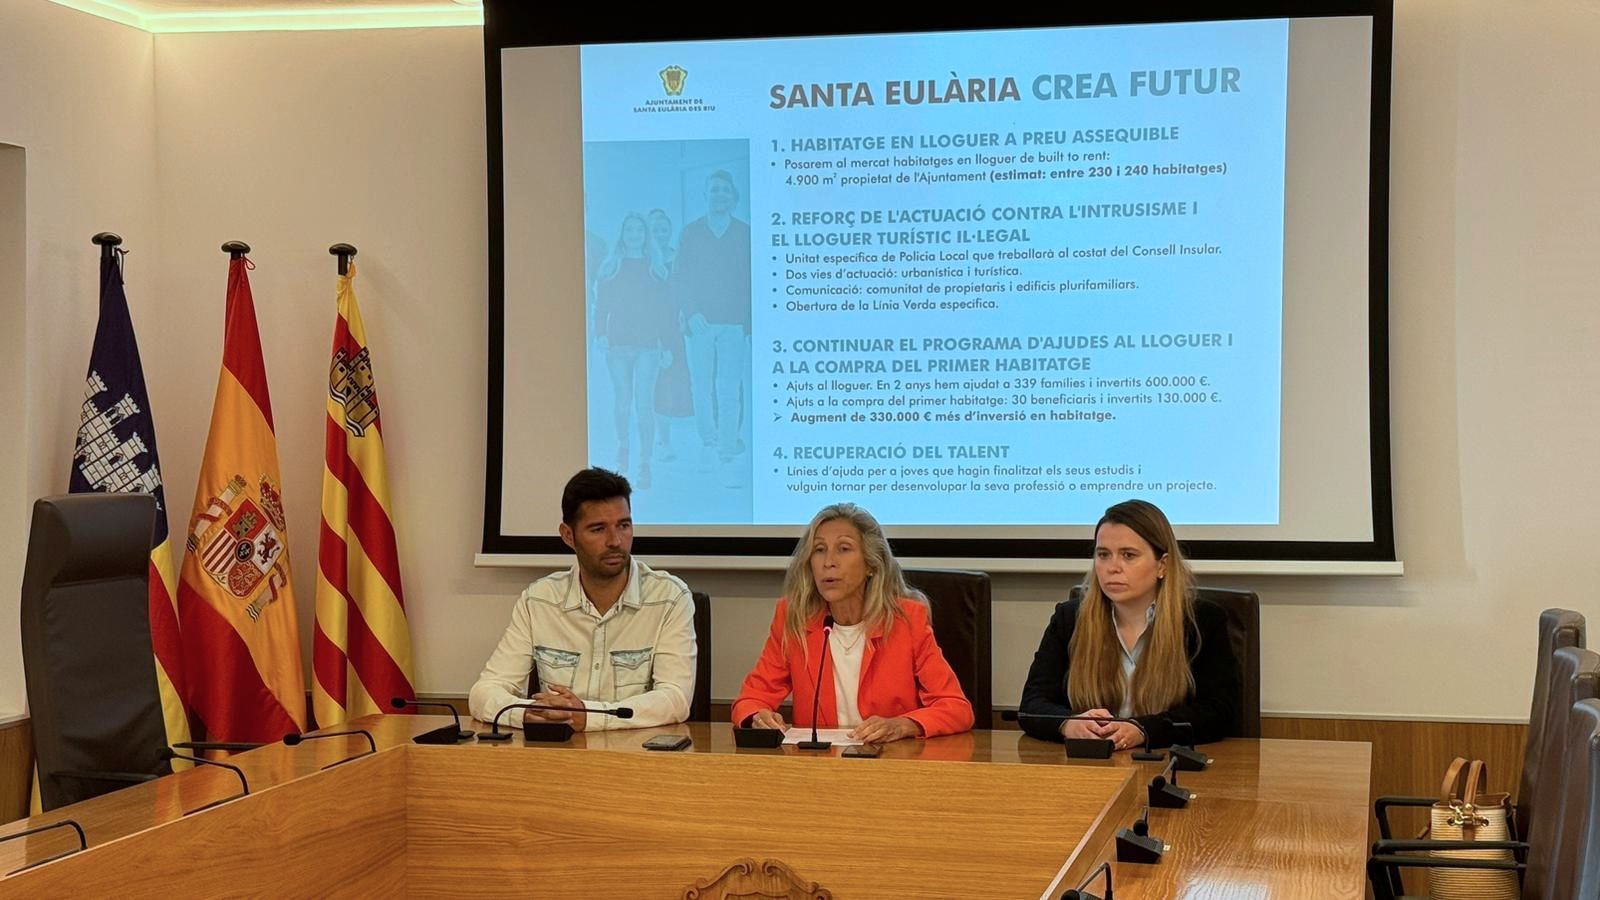 Santa Eulària presenta el primer plan ‘Santa Eulària Crea Futur’ de actuación para facilitar el acceso a la vivienda